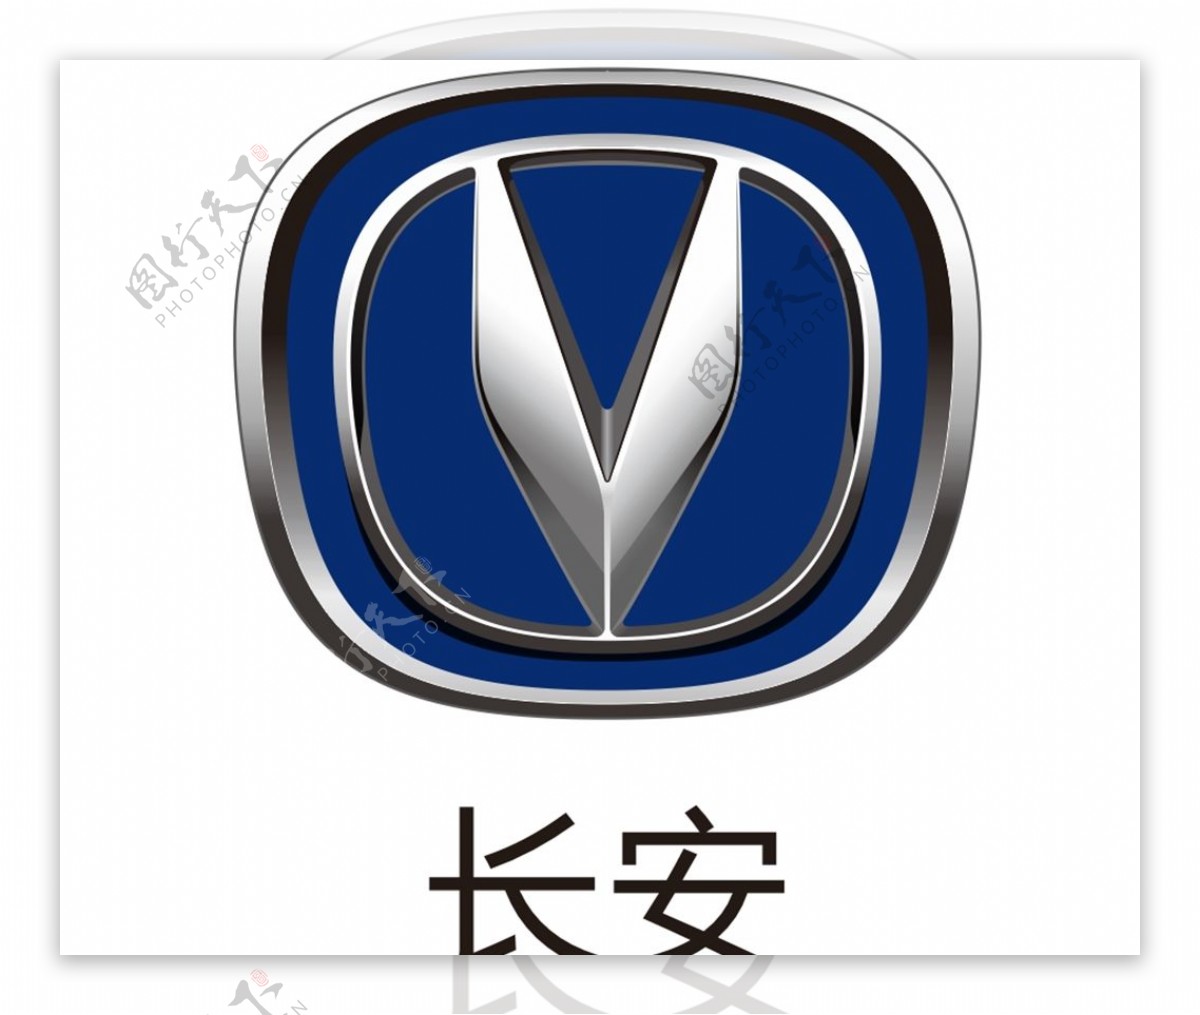 长安标志长安logo图片